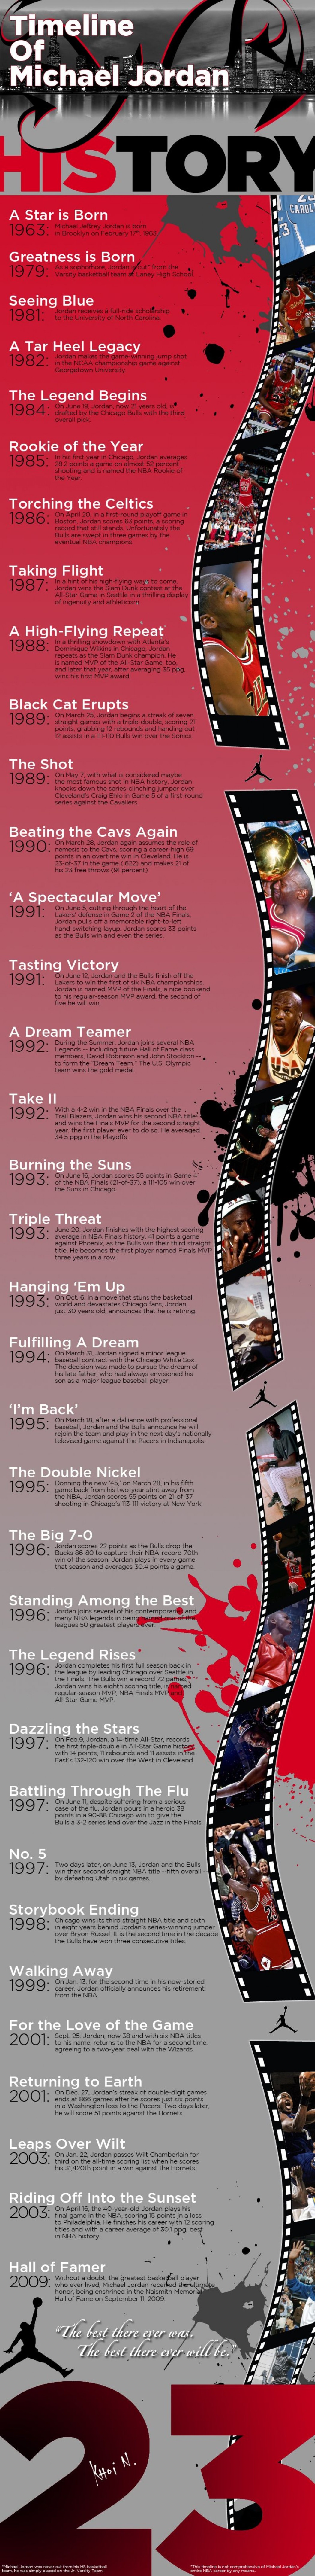 Michael Jordan timeline